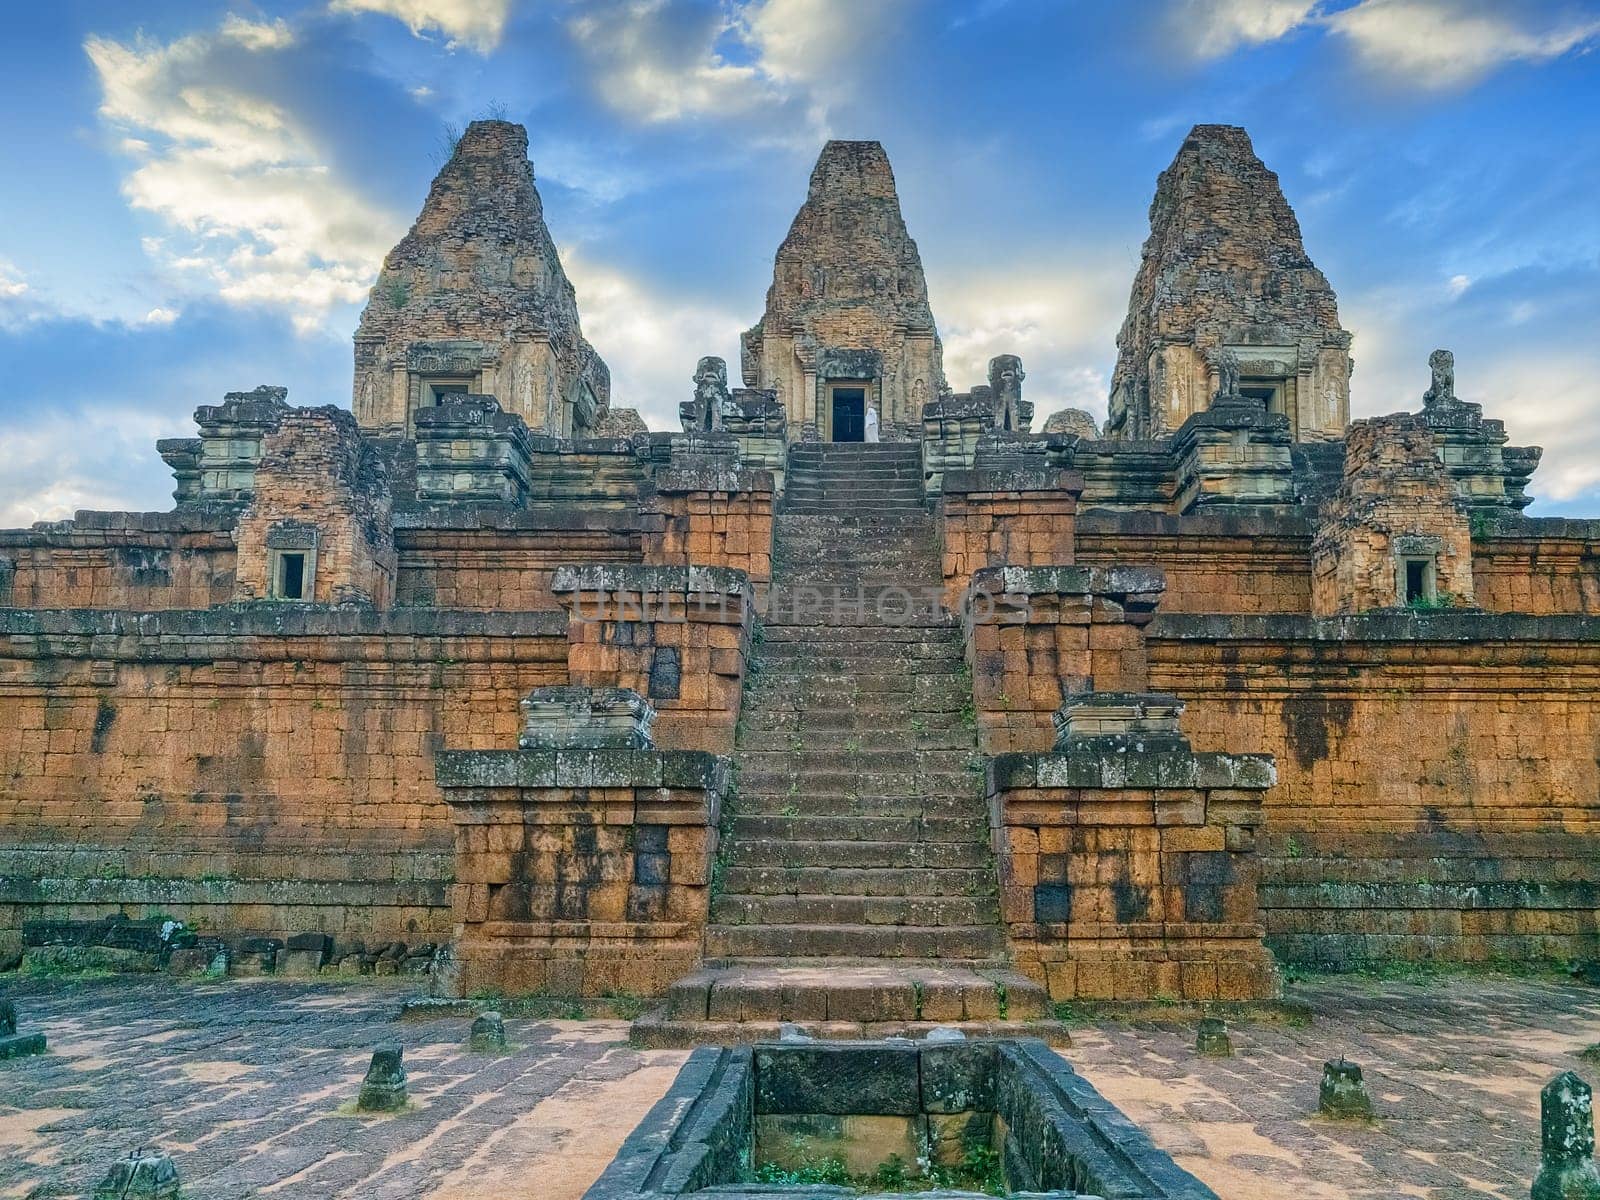 Pre Rup temple, Angkor, Cambodia by Elenaphotos21